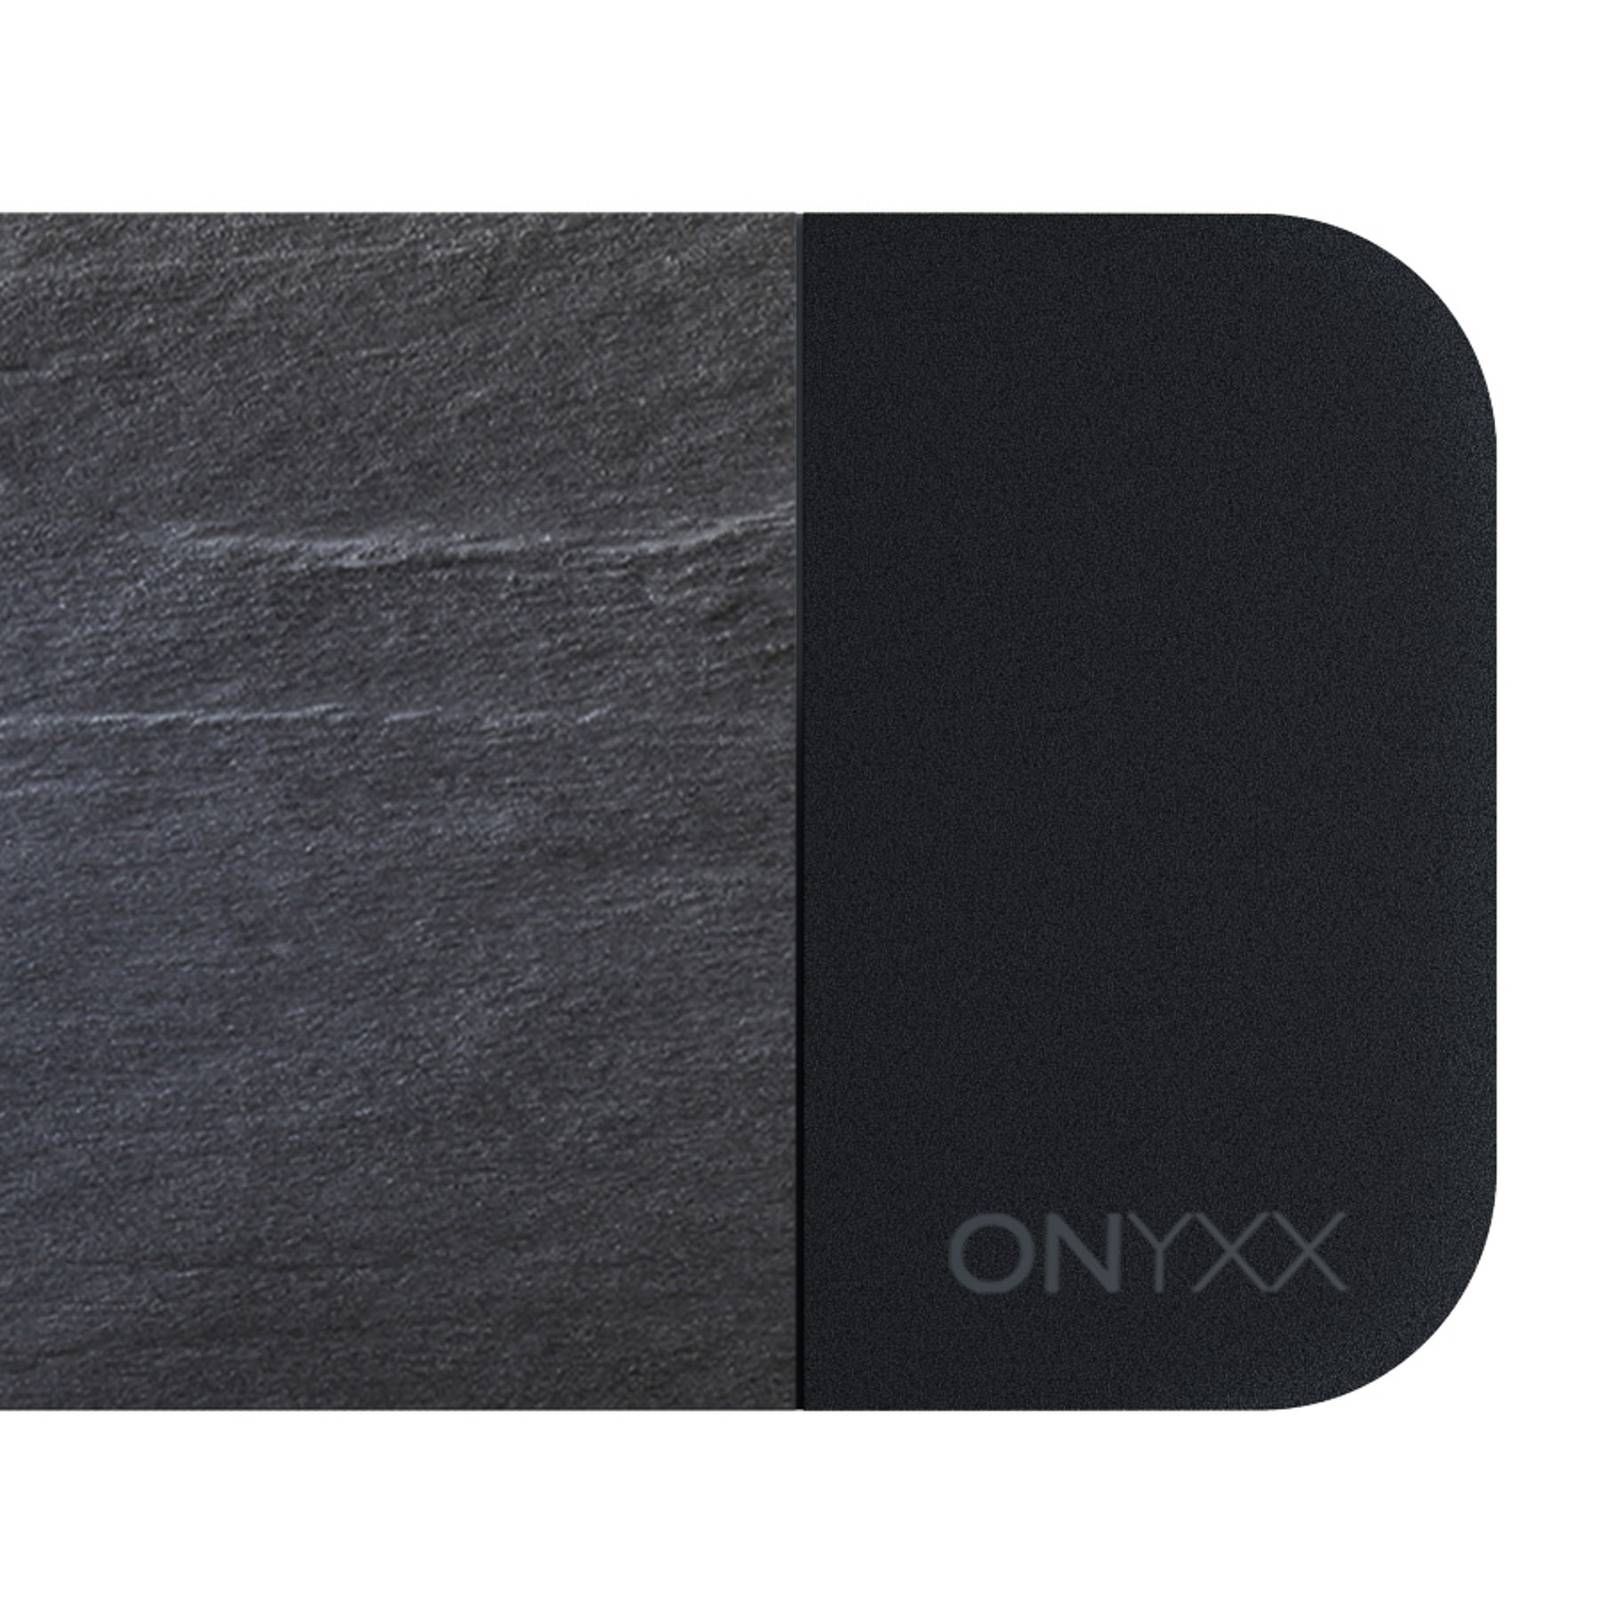 GRIMMEISEN Onyxx Linea Pro pendel skifer/svart